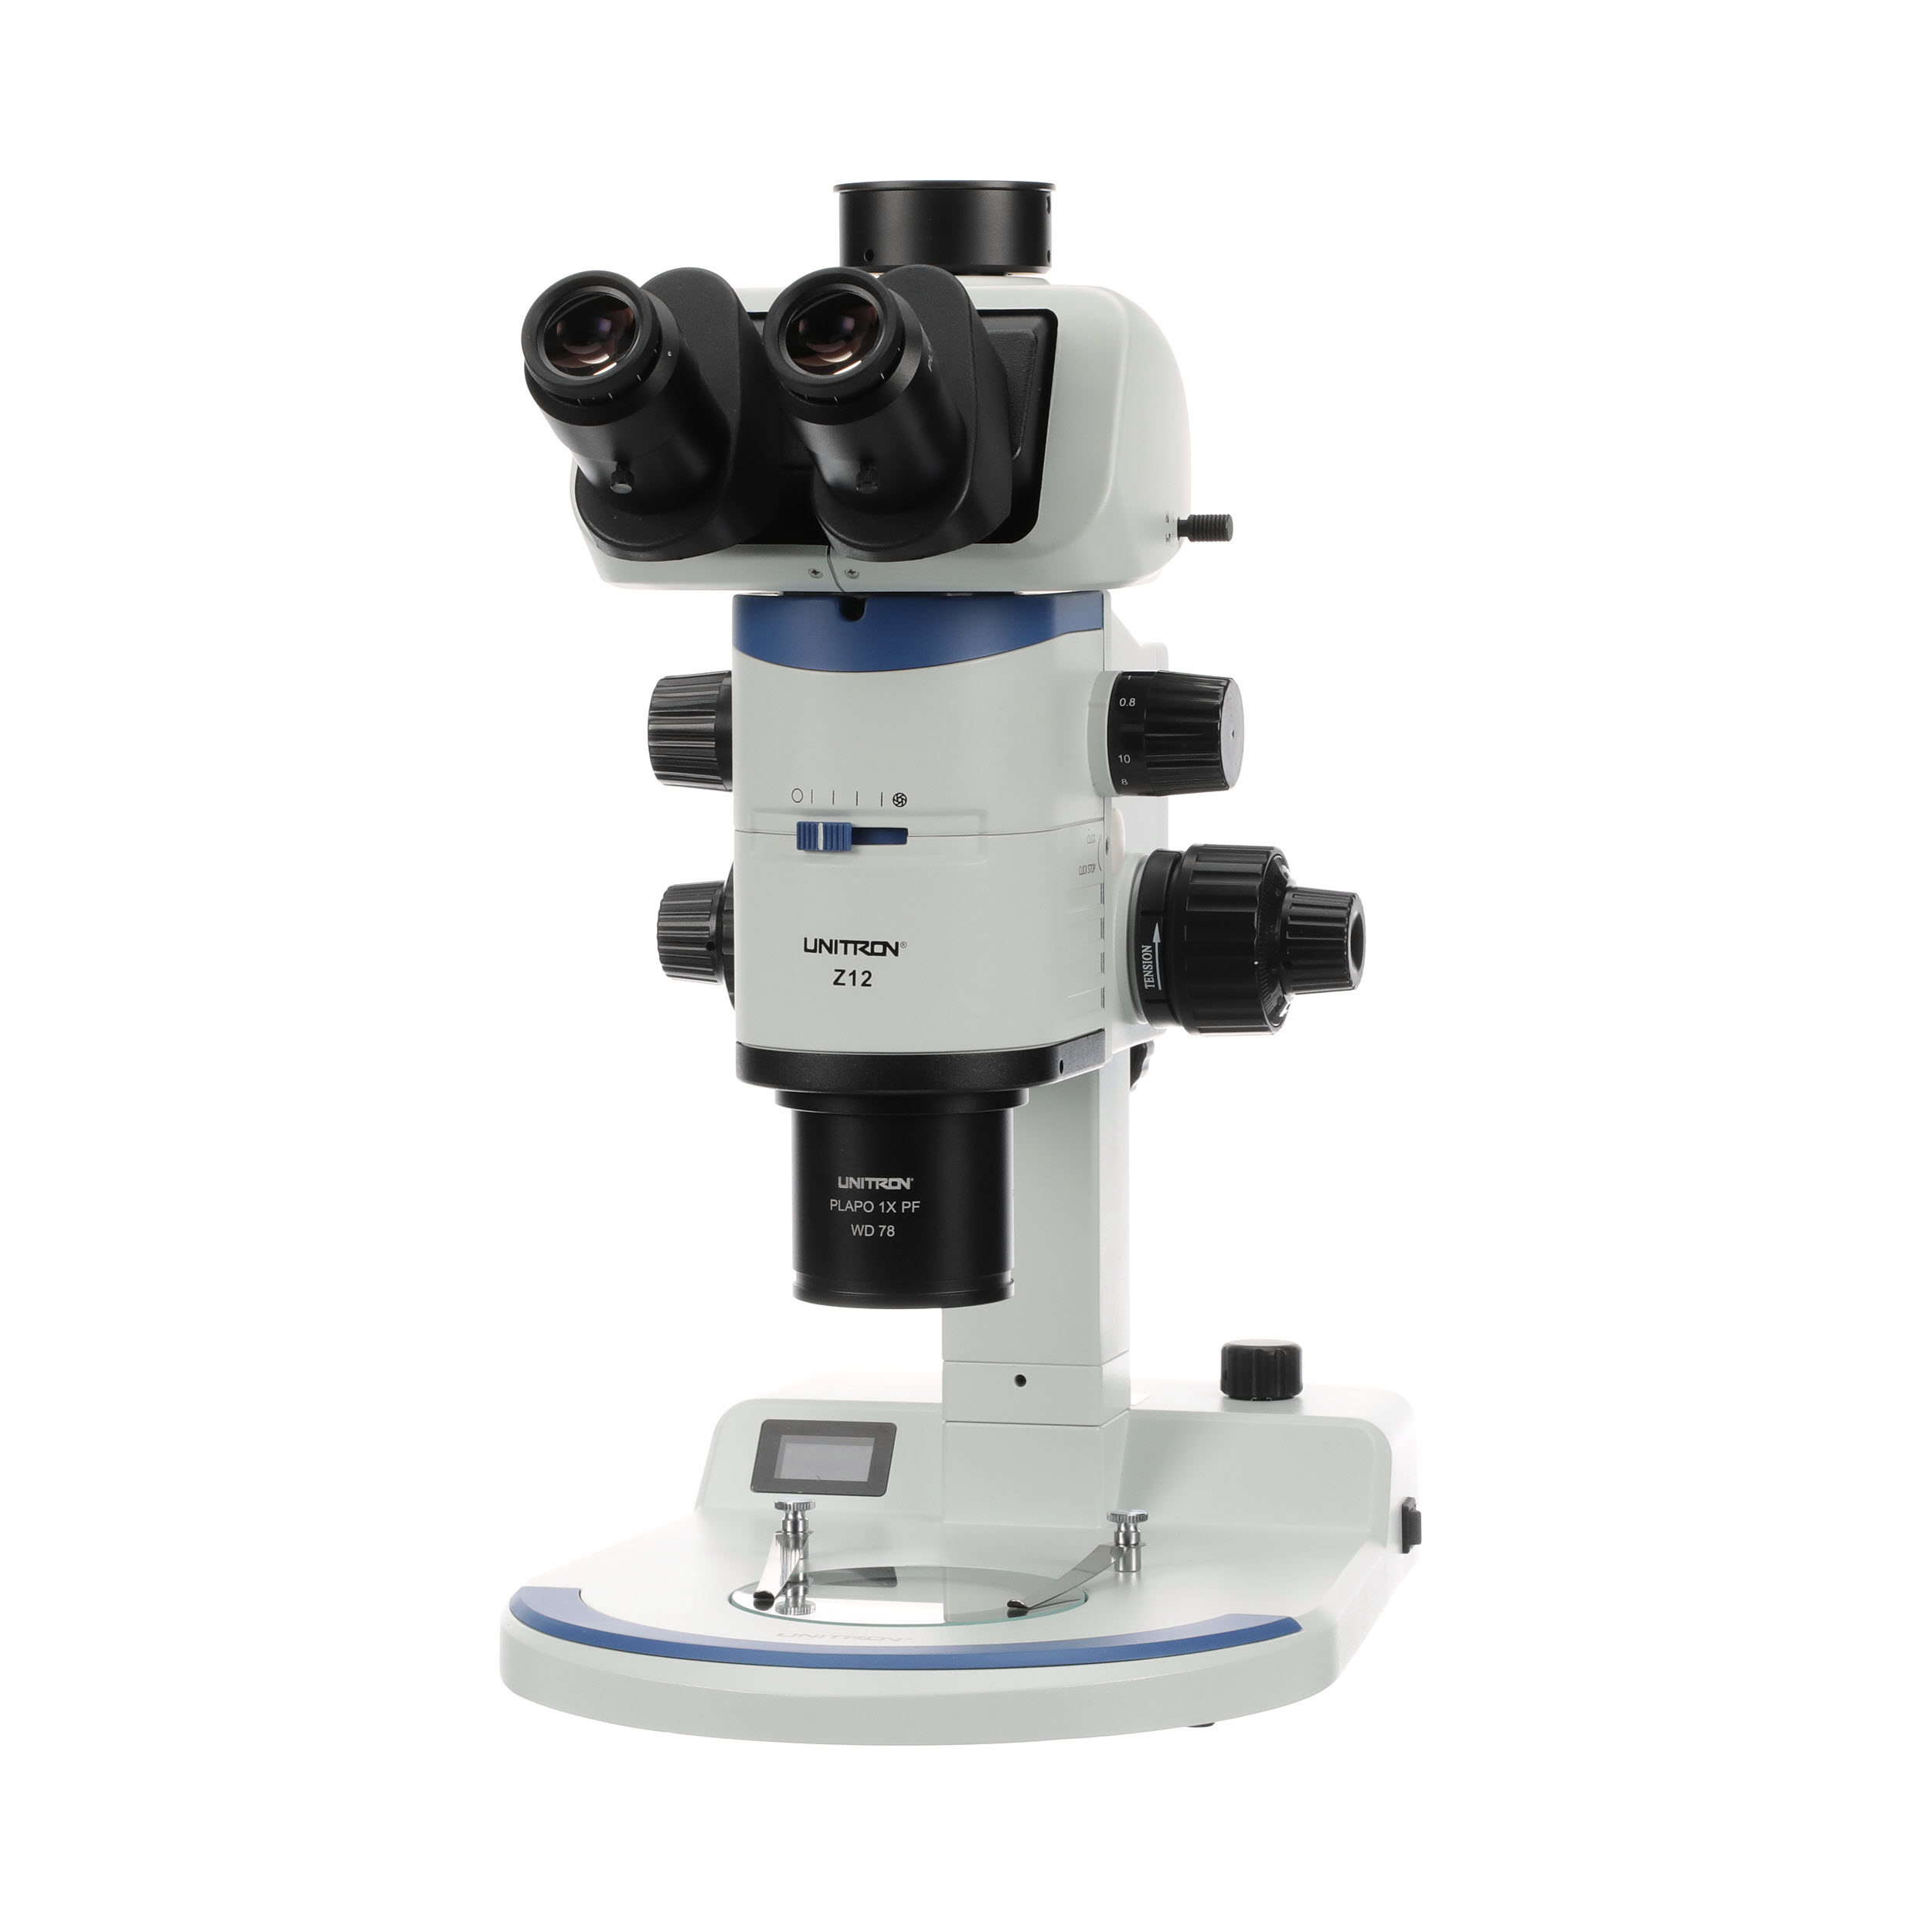 Z12 zoom stereo microscope